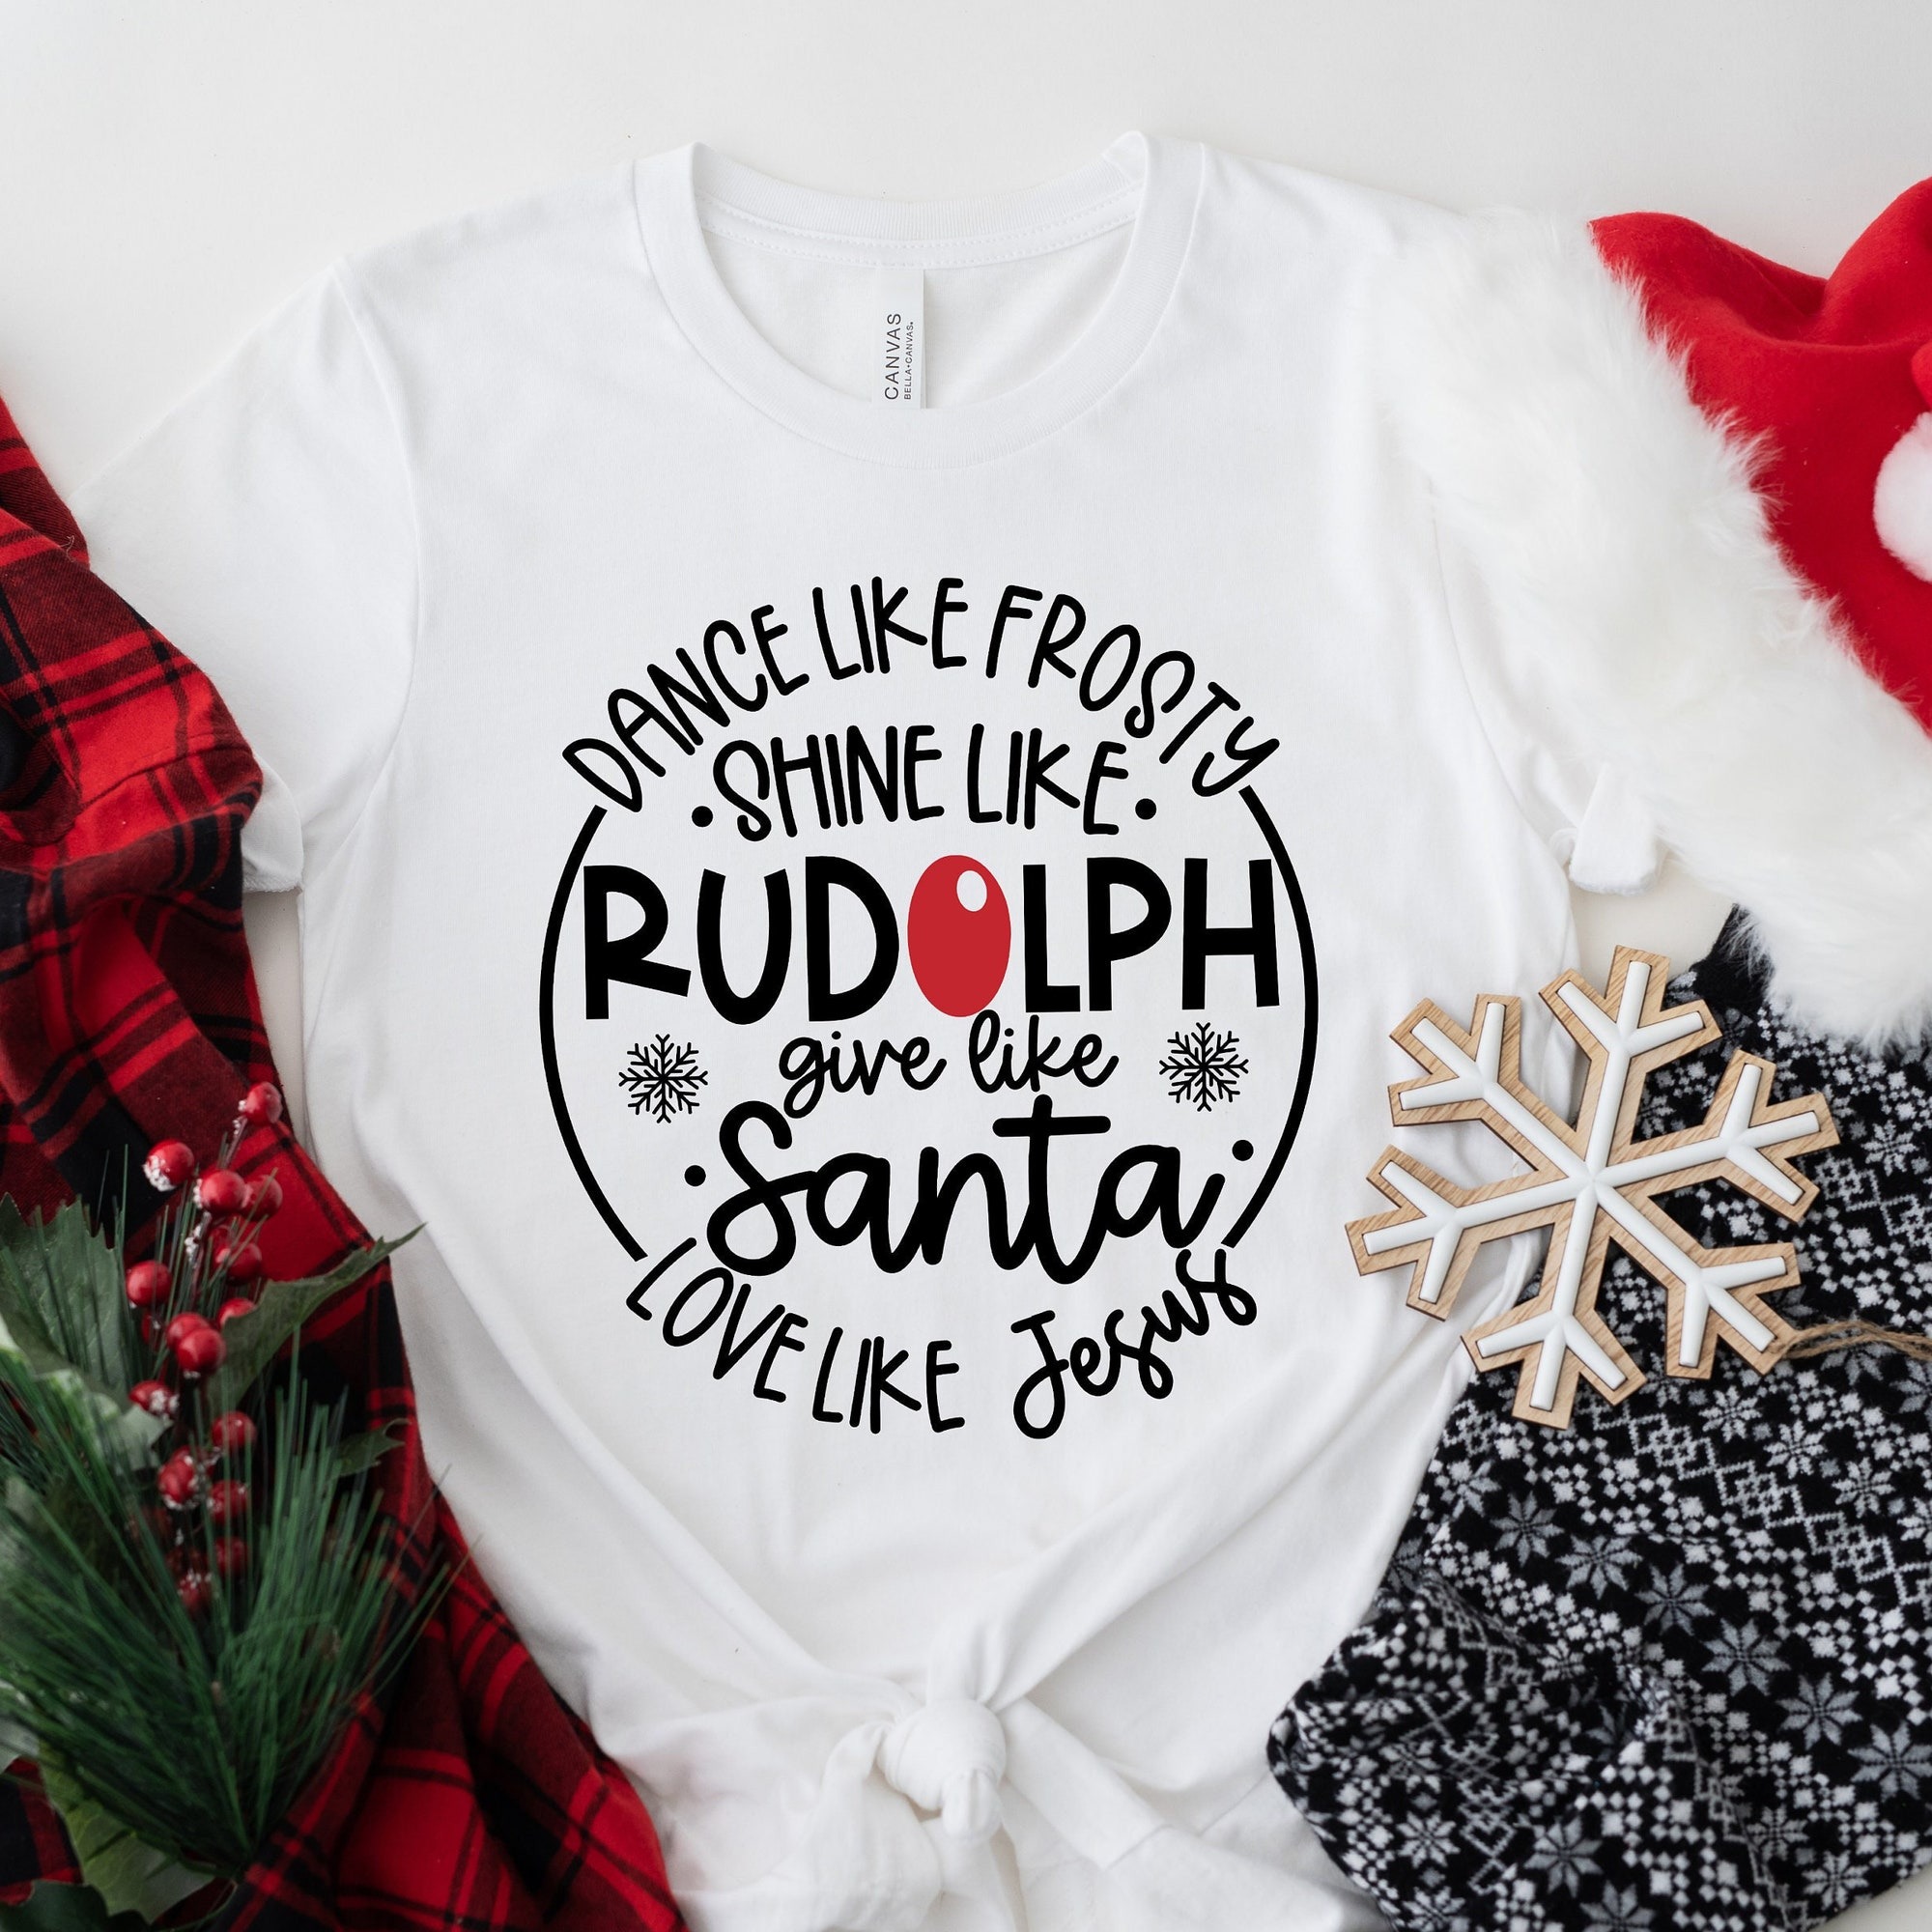 Dance Like Frosty Shine Like Rudolph Give Like Santa Love Like Jesus Shirt  Cute Christmas Shirt  Christmas Gift Shirt  Holiday Shirt